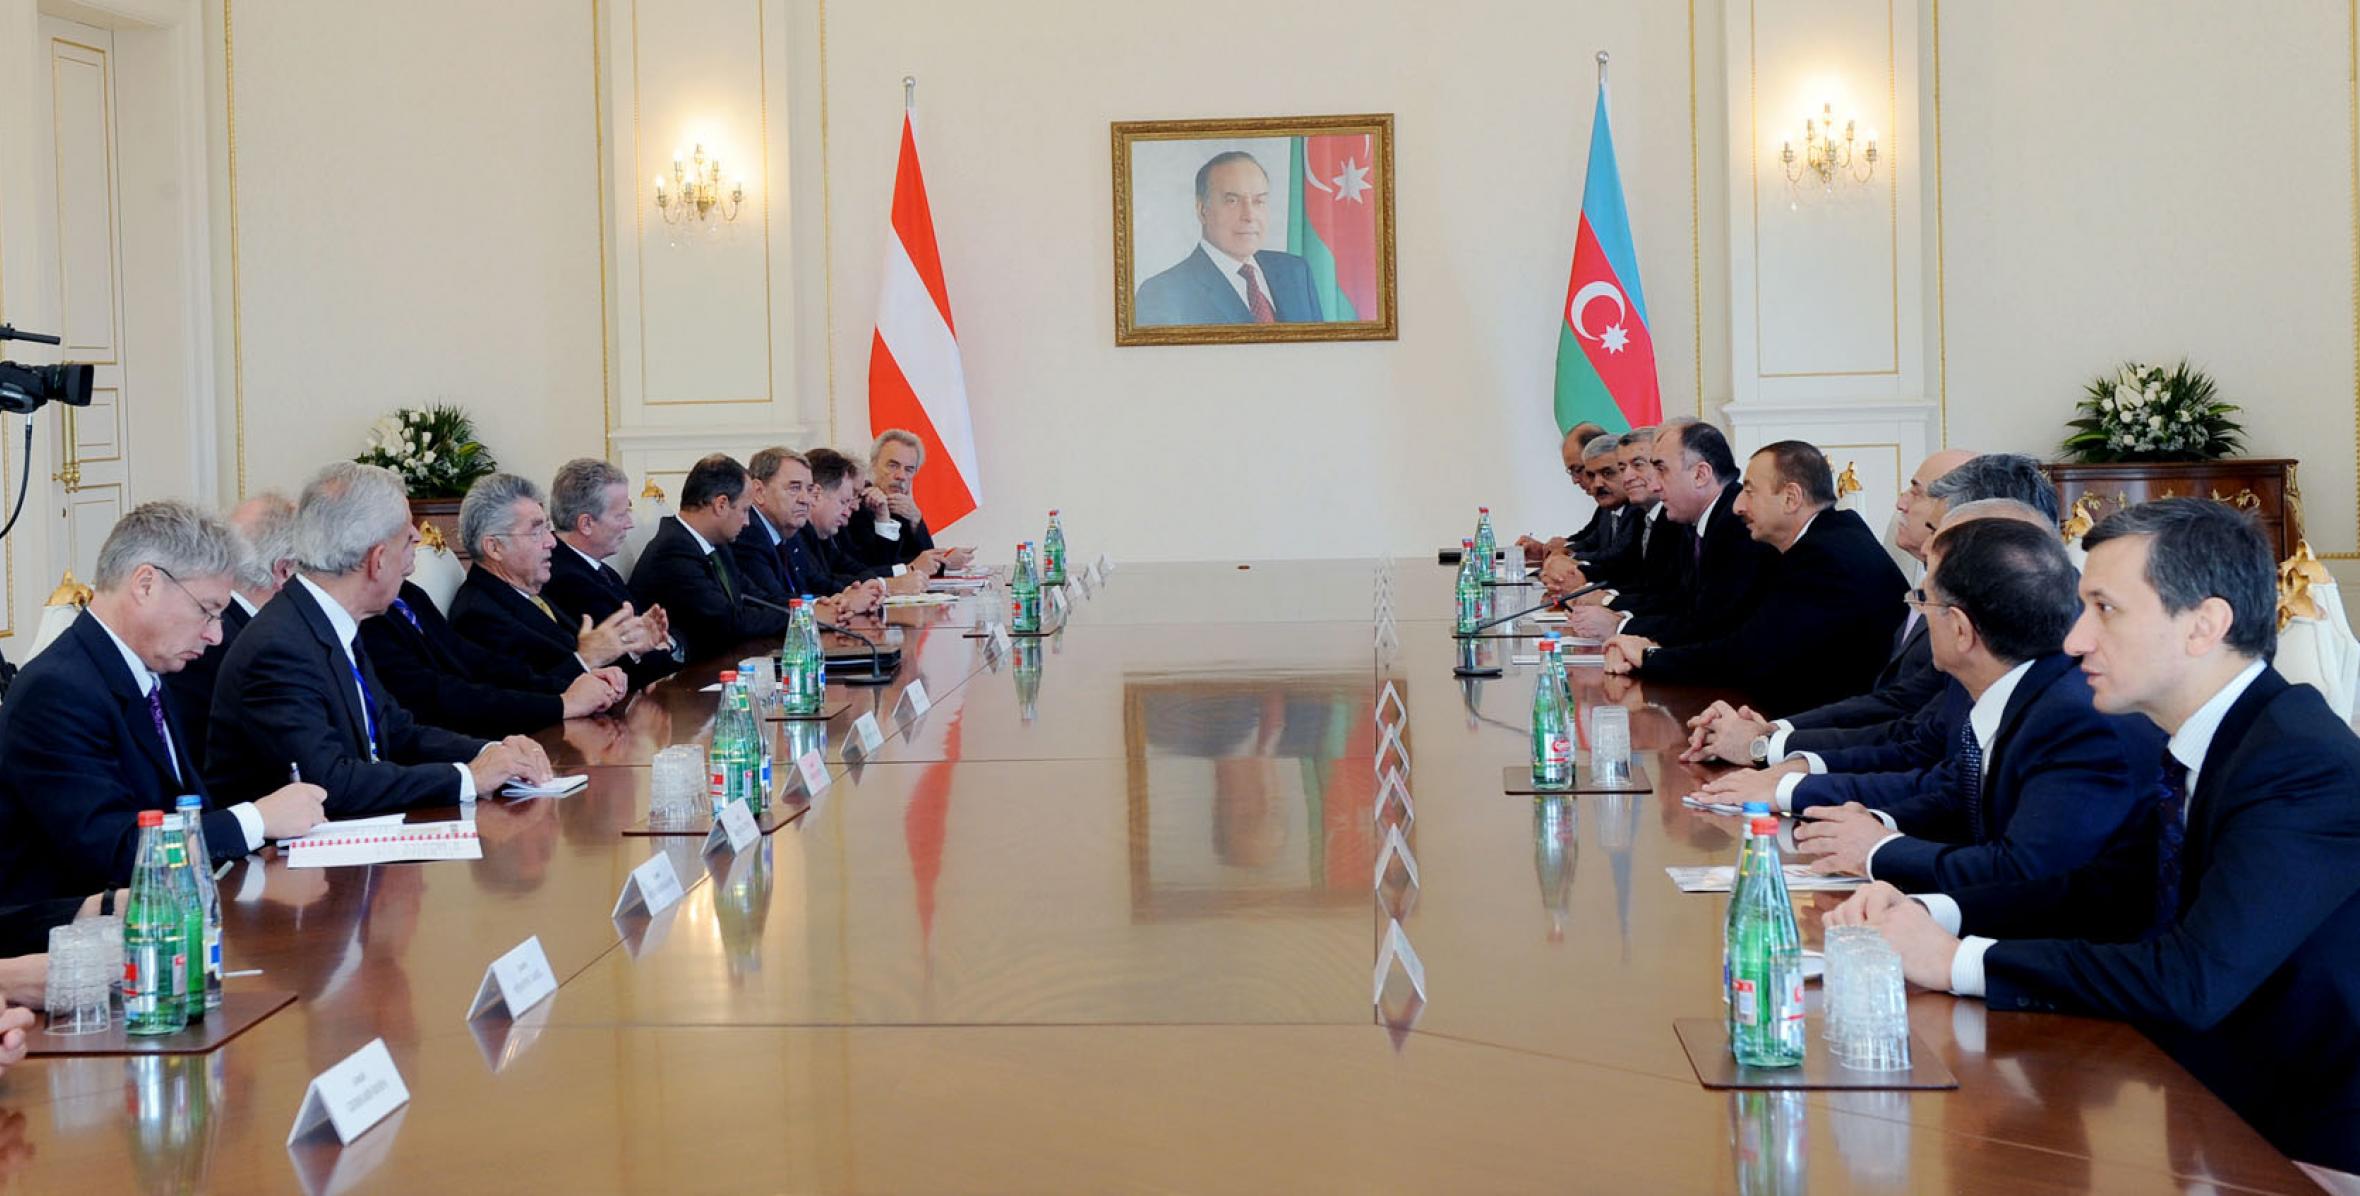 Состоялась встреча президентов Азербайджана и Австрии в расширенном составе